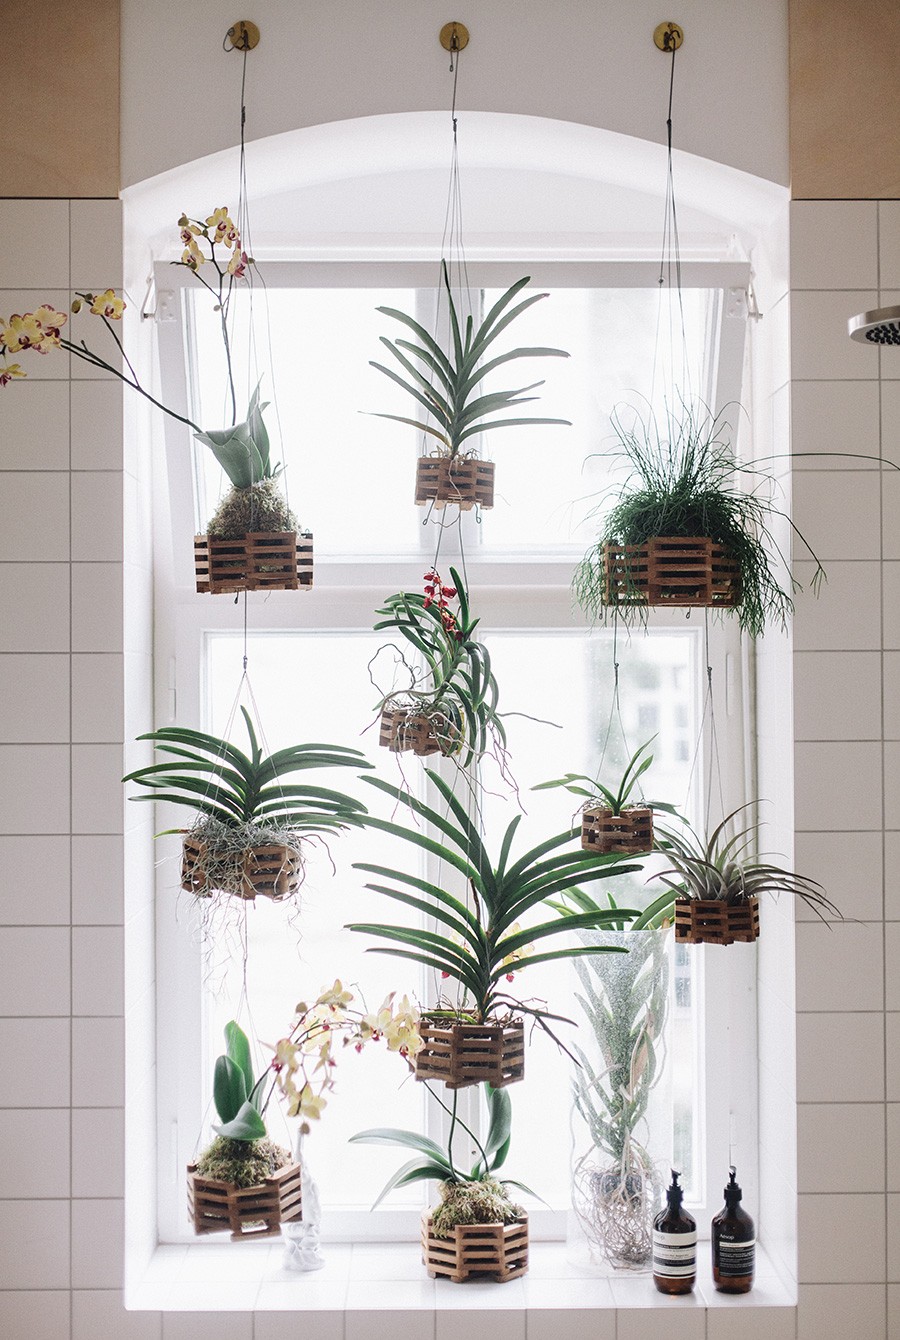 Орхидеи в горшках на подоконнике. Подвесные кашпо в квартире. Подвесные кашпо в интерьере квартиры. Комнатные растения в подвесных кашпо в интерьере. Подвесные кашпо на окне.